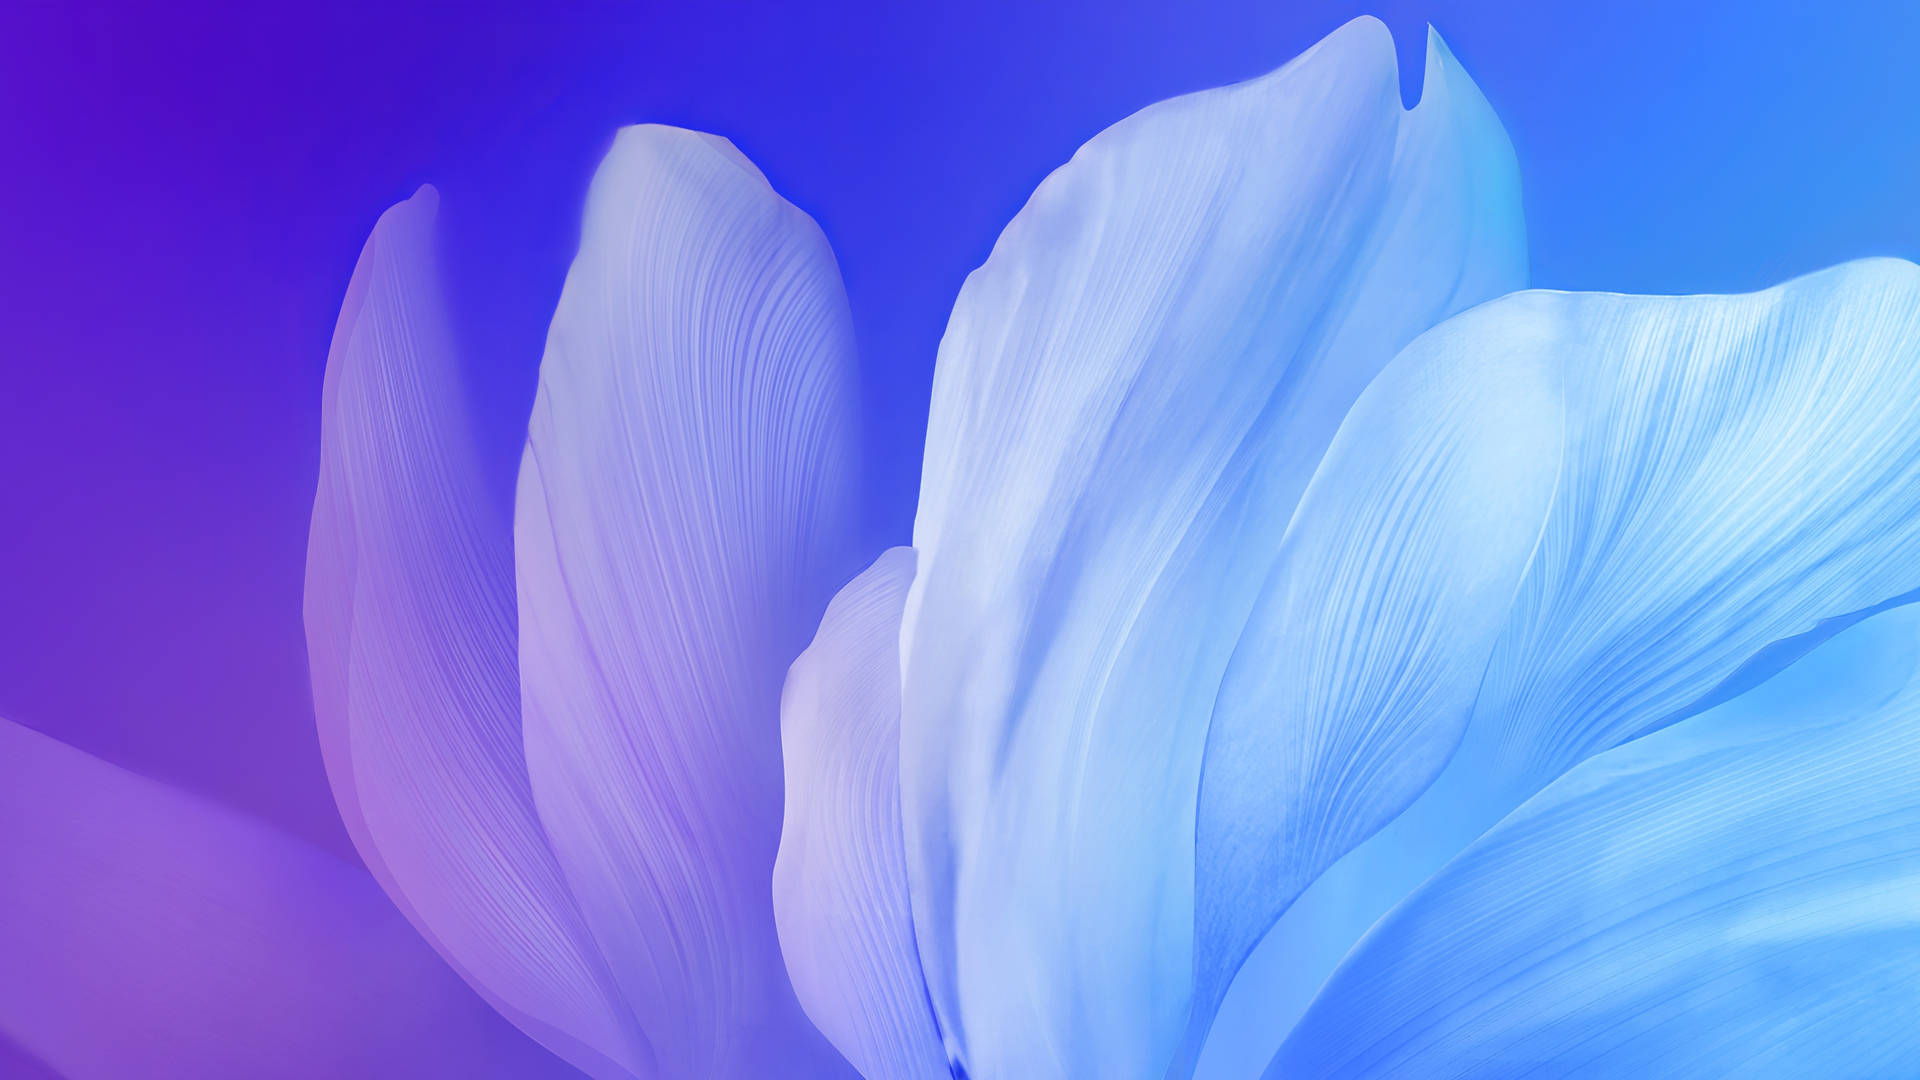 4D Ultra HD Flowing Petals Wallpaper